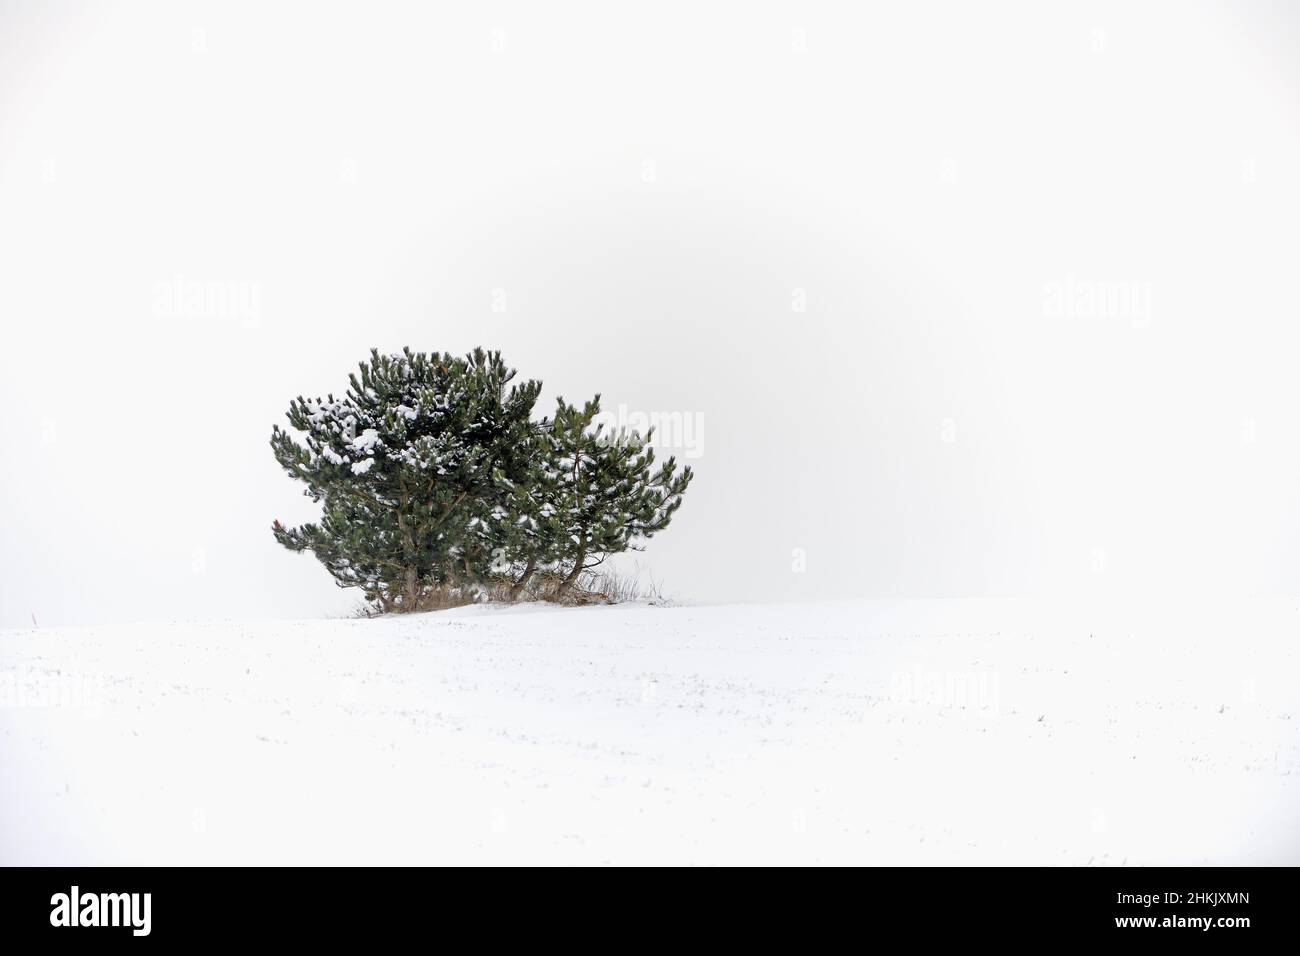 Mountain pine, Mugo pine (Pinus mugo), single bush in snow, Germany Stock Photo